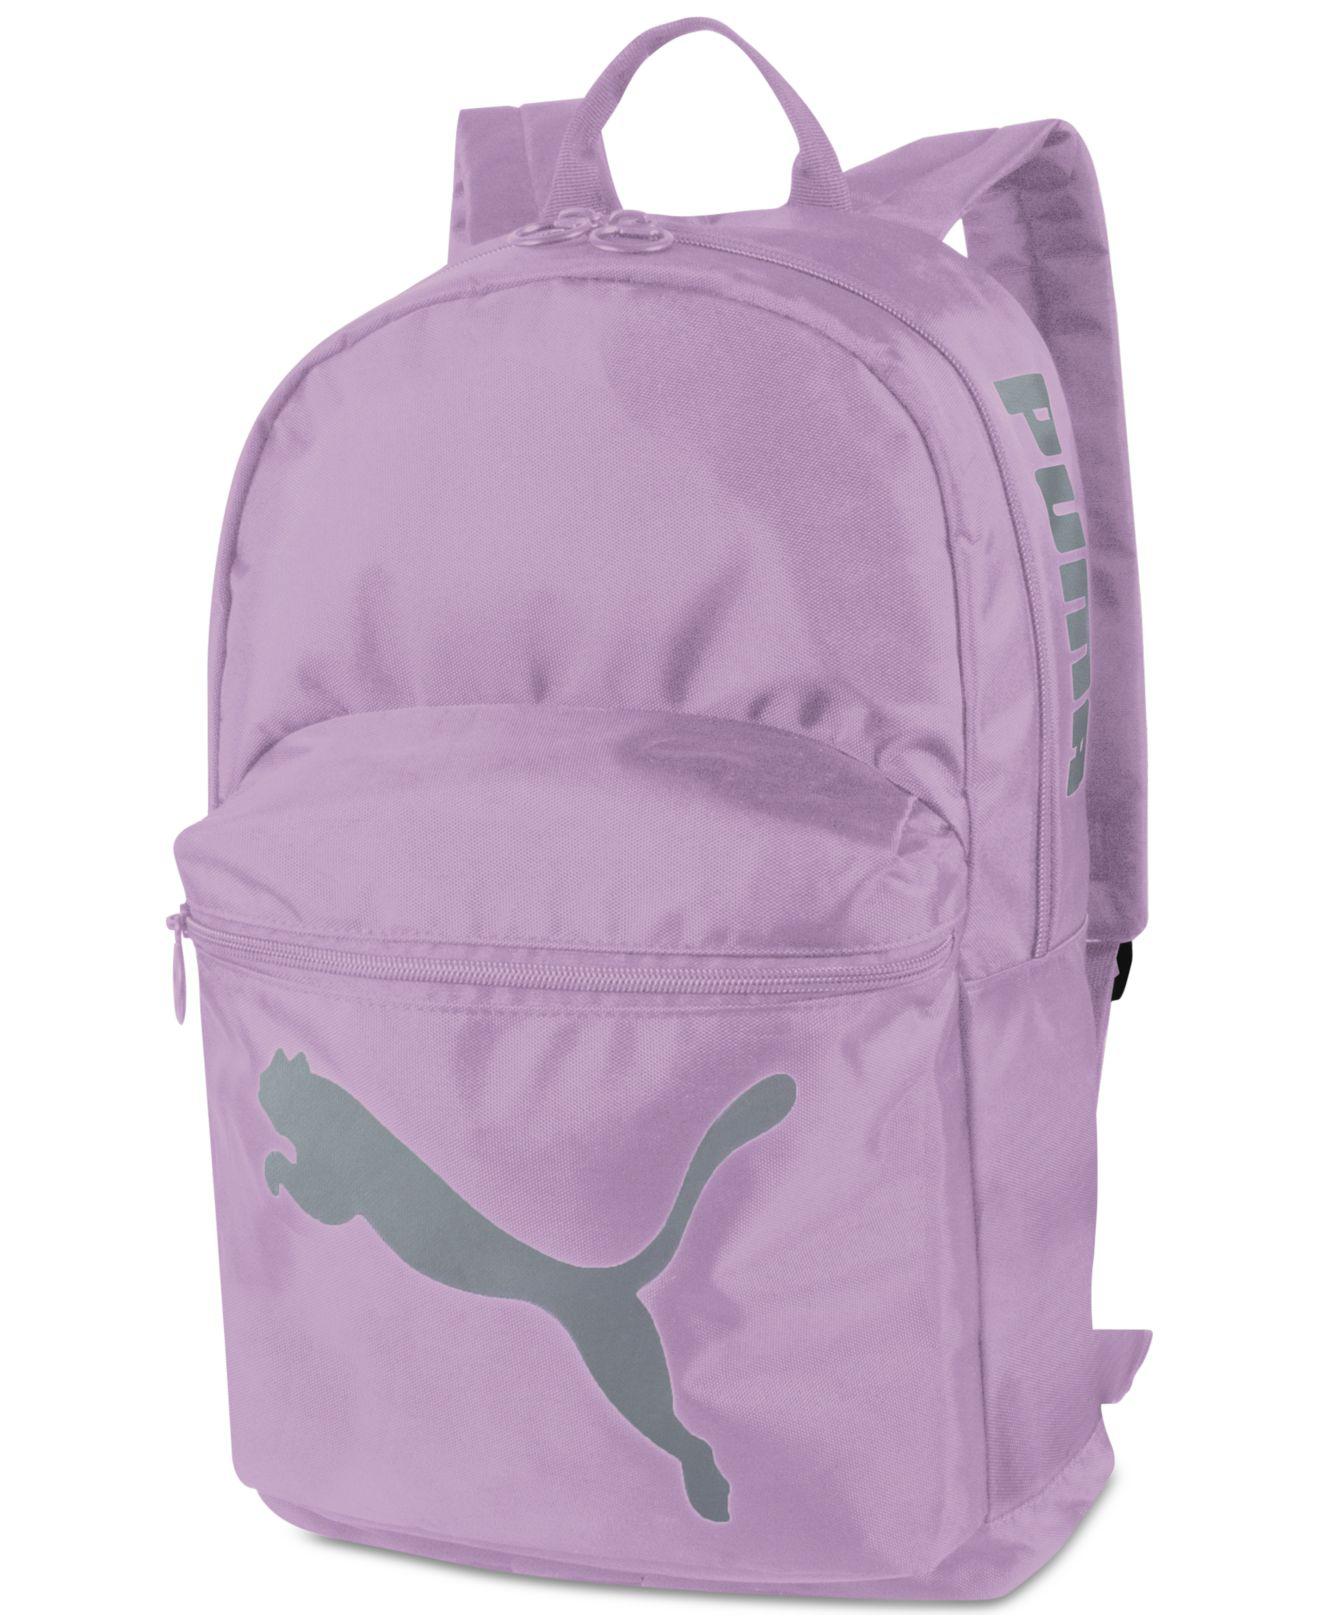 Essential Backpack in Pastel Purple 